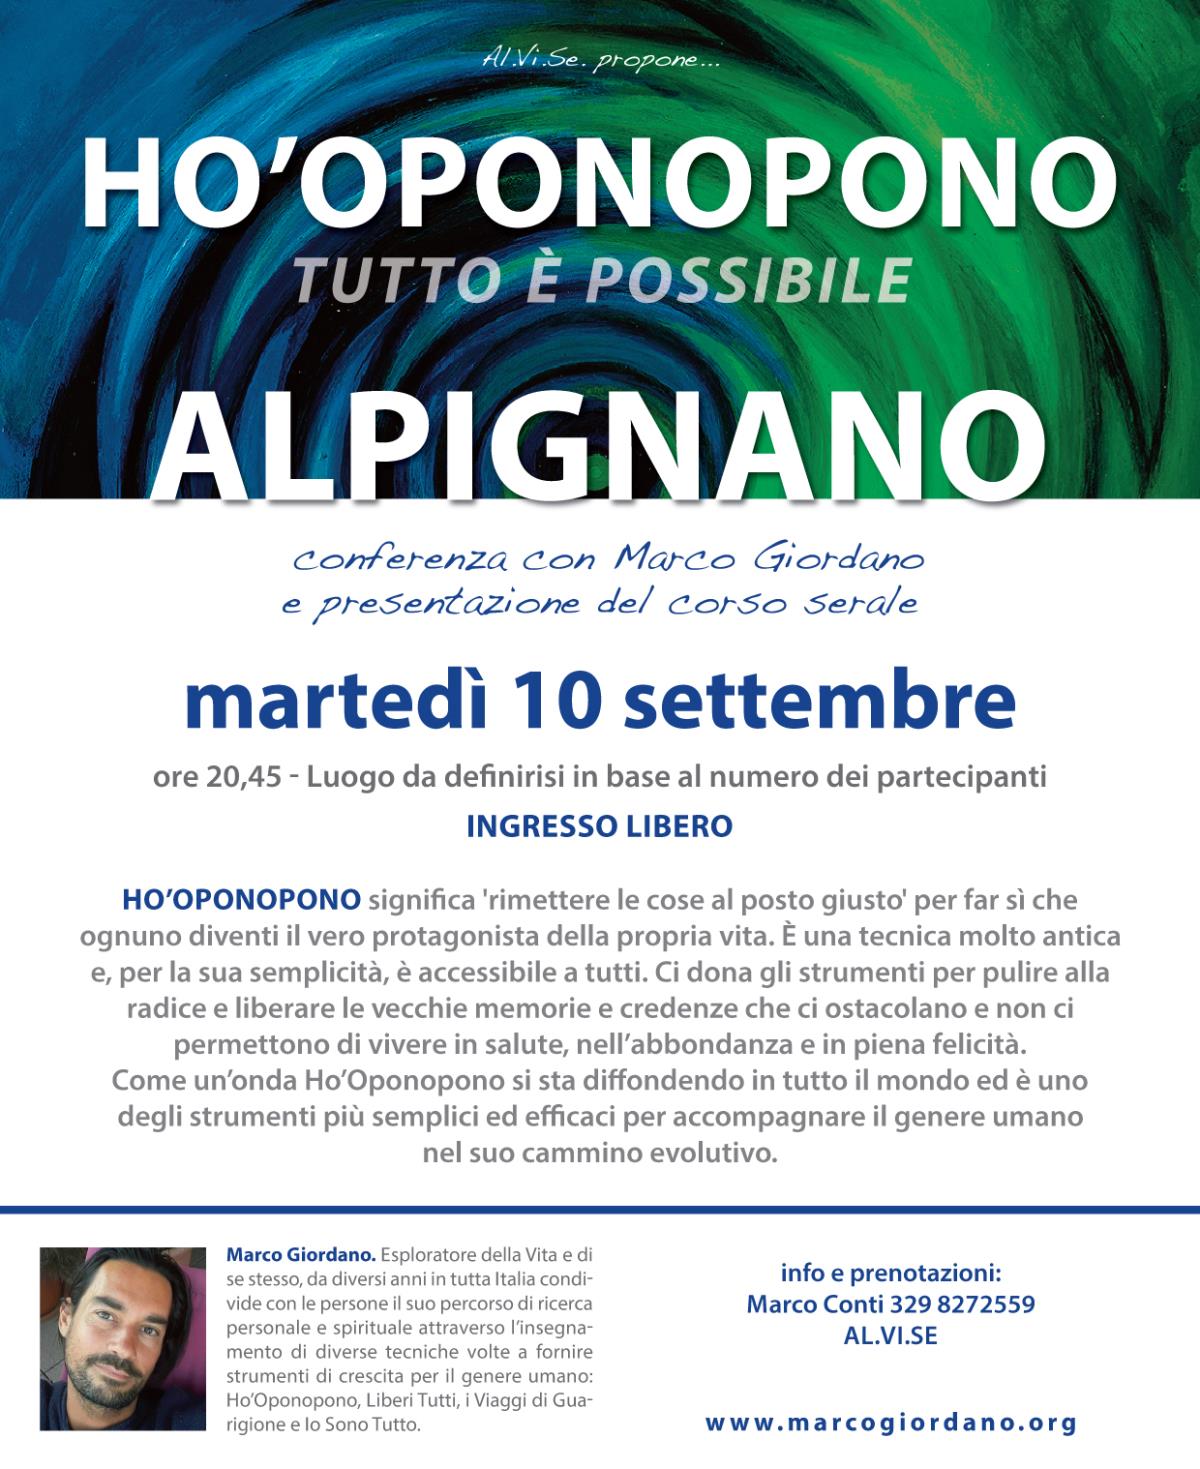 Conferenza e presentazione del corso serale <b>HO'OPONOPONO</b> marted 10 settembre <b>ALPIGNANO (TO)